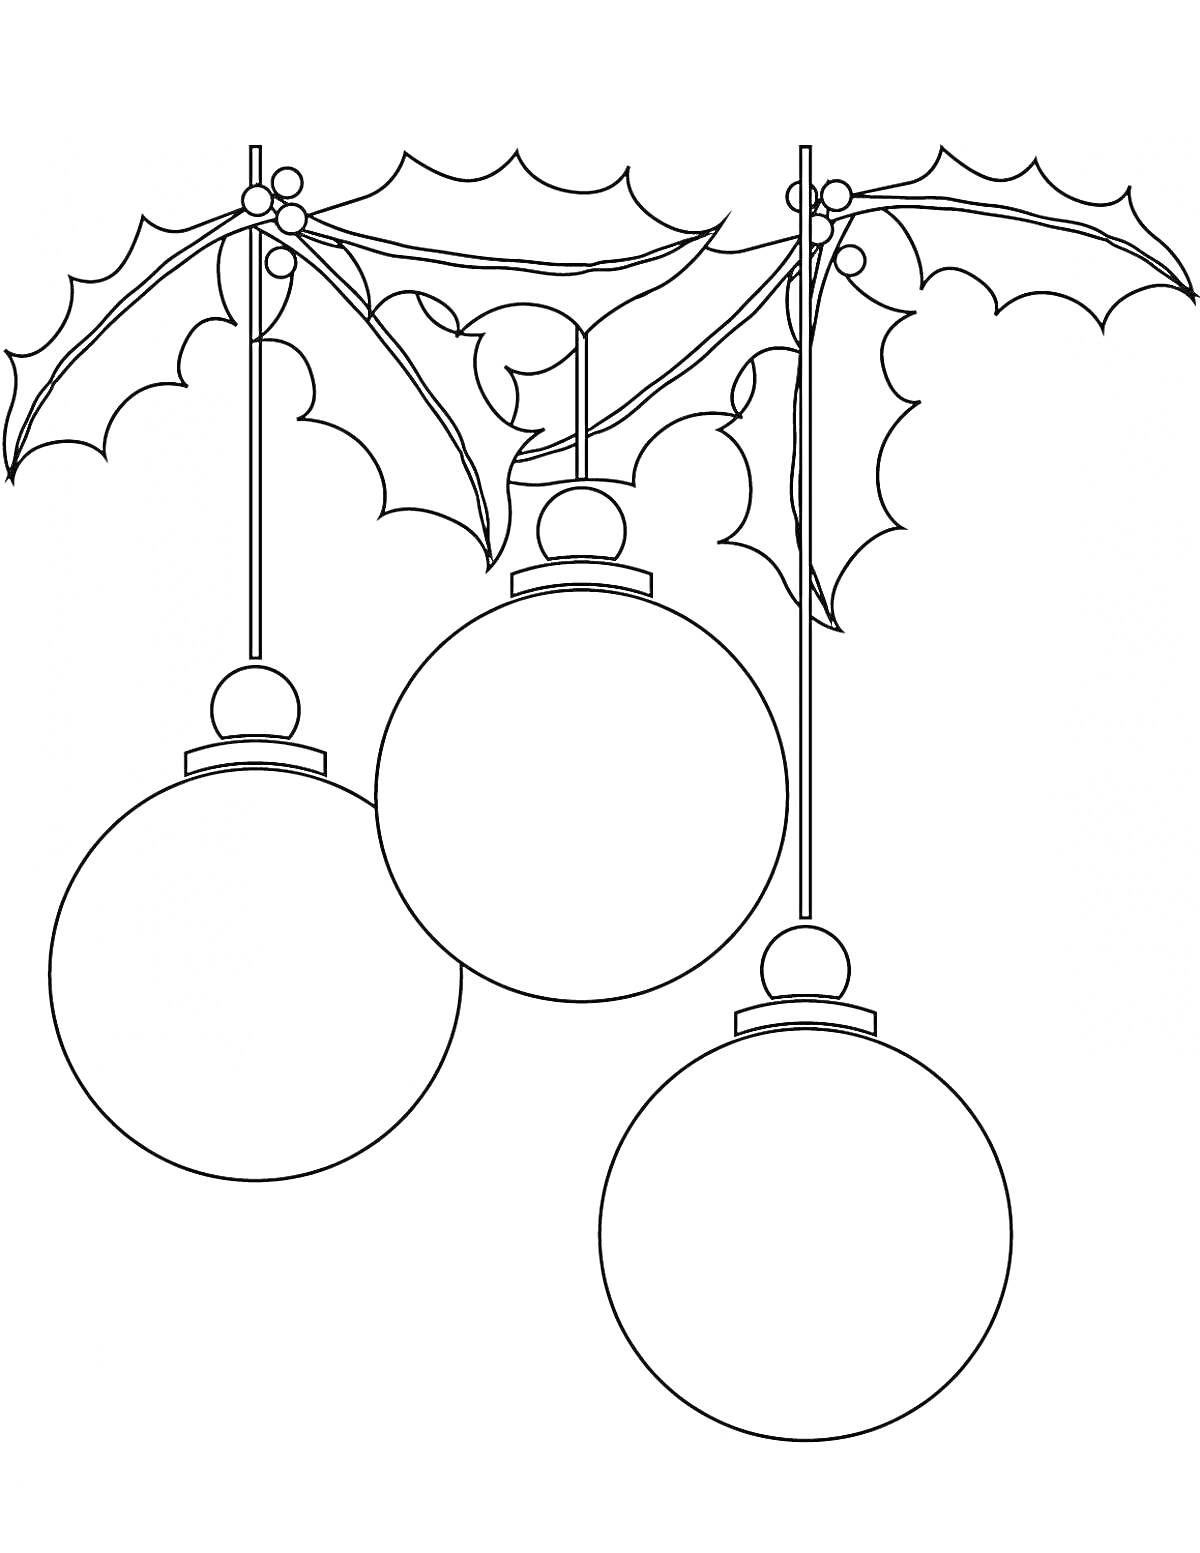 Три новогодних шара, подвешенные на ветке с листьями остролиста